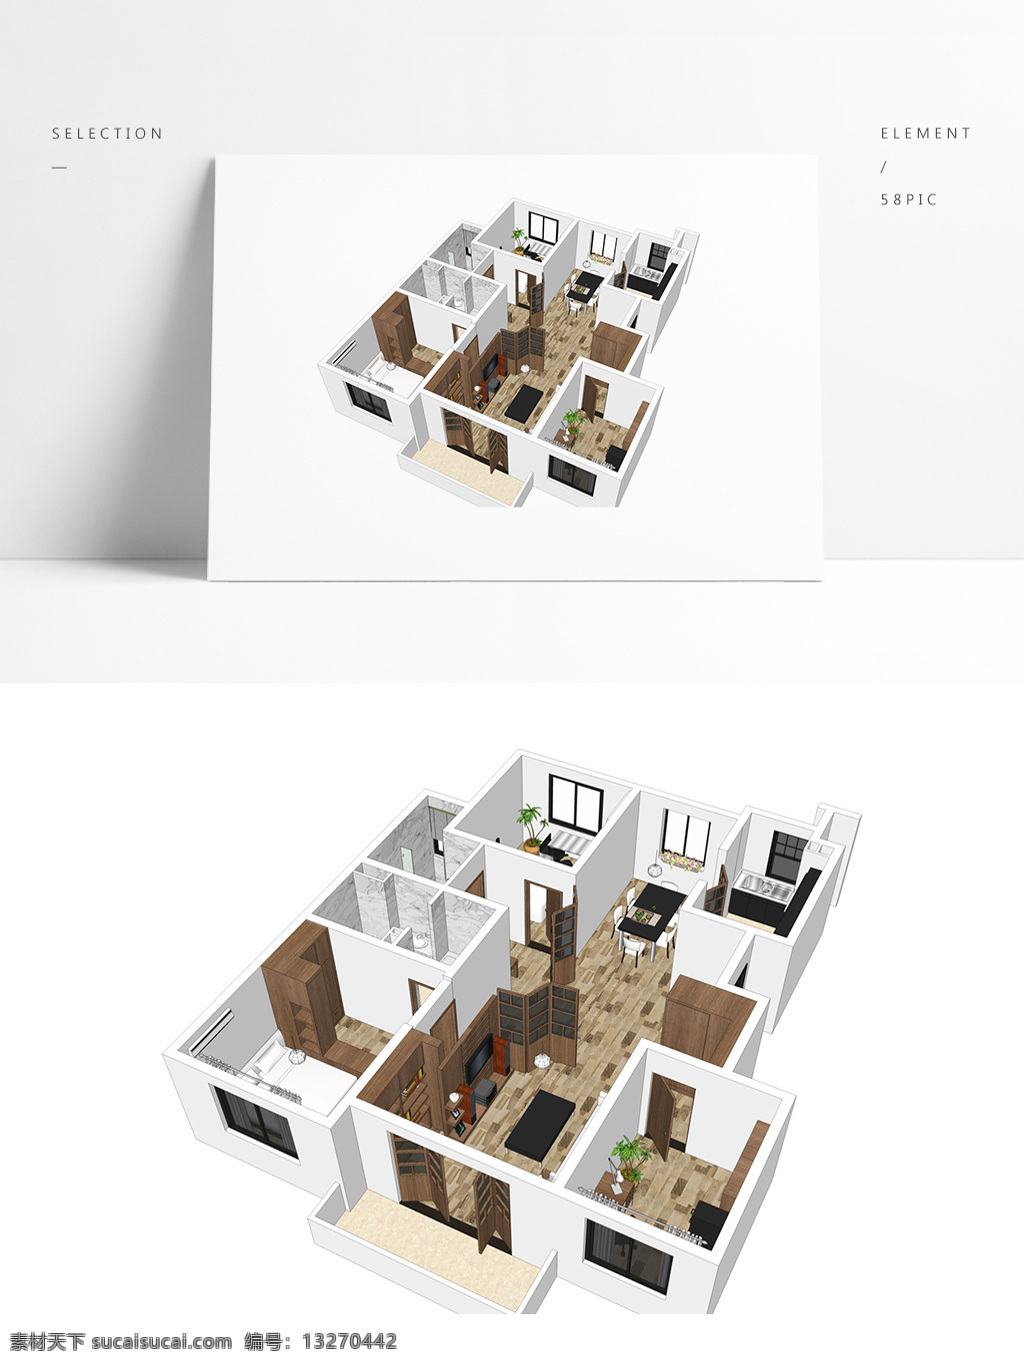 原木 风 风格 su 透视 模型 室内空间设计 住宅室内设计 样板房 3d模型 su模型 草图大师模型 家具模型